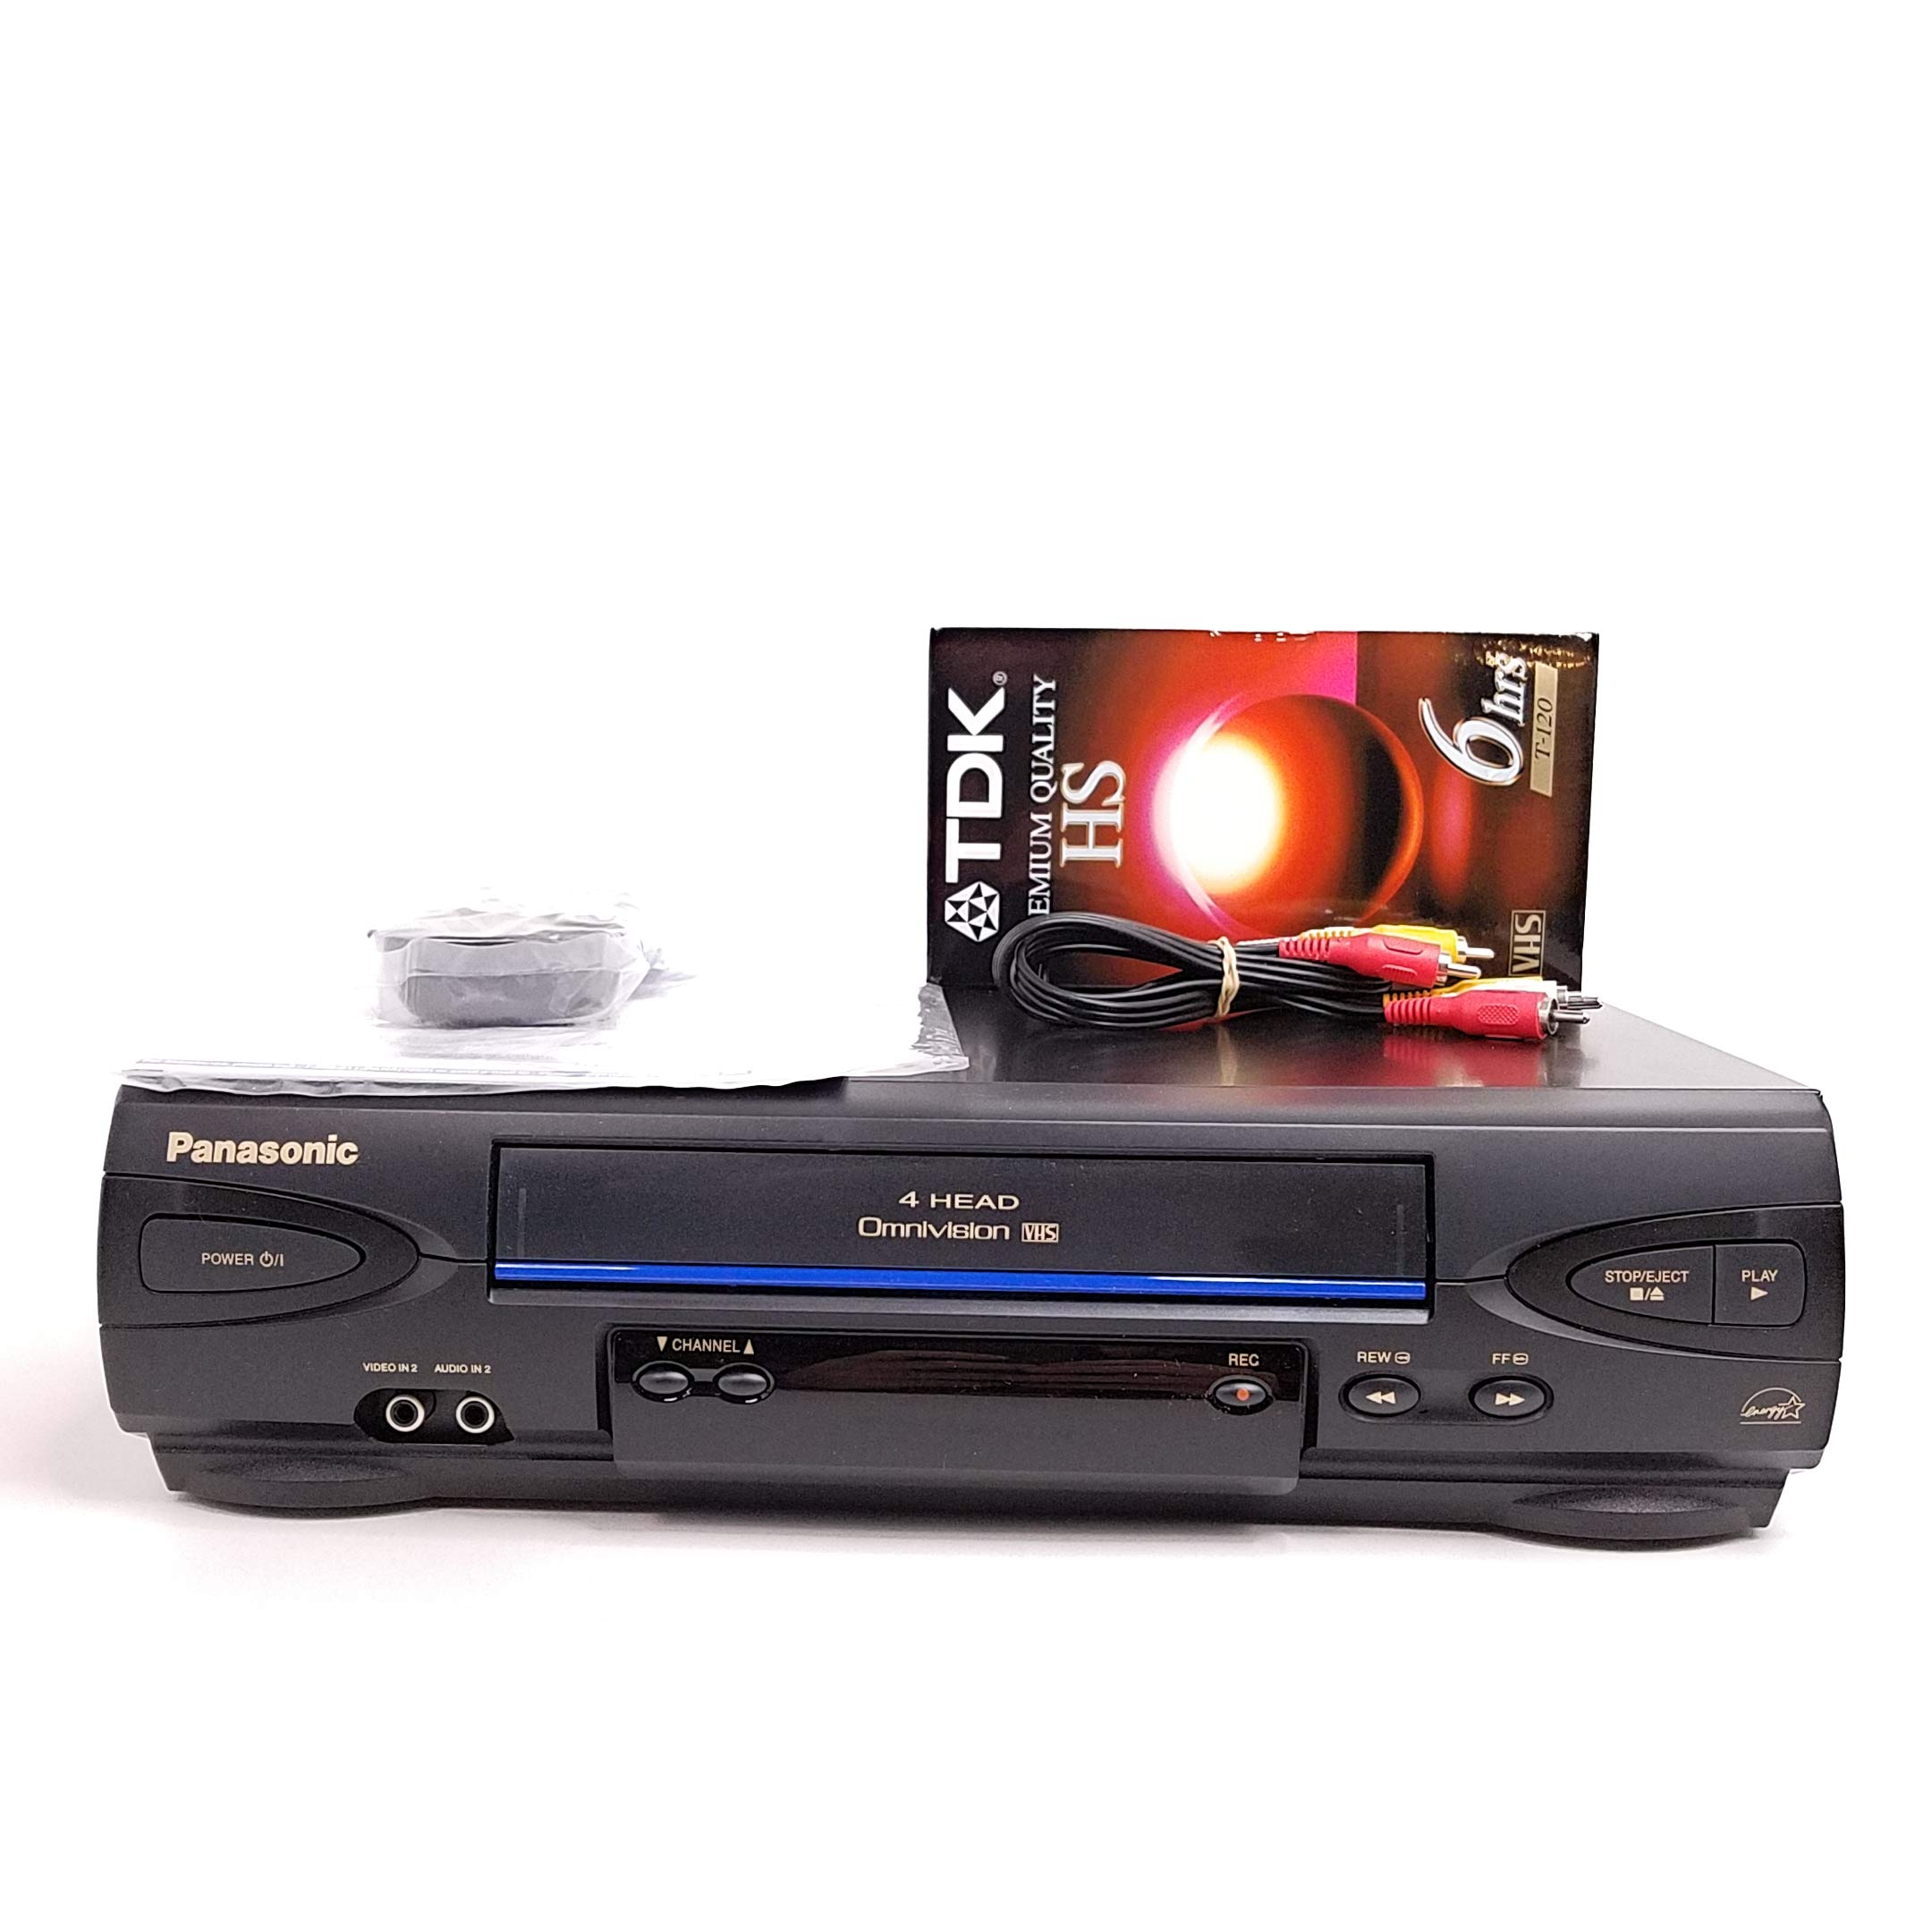 Panasonic VCR VHS player Model # PV-V4022